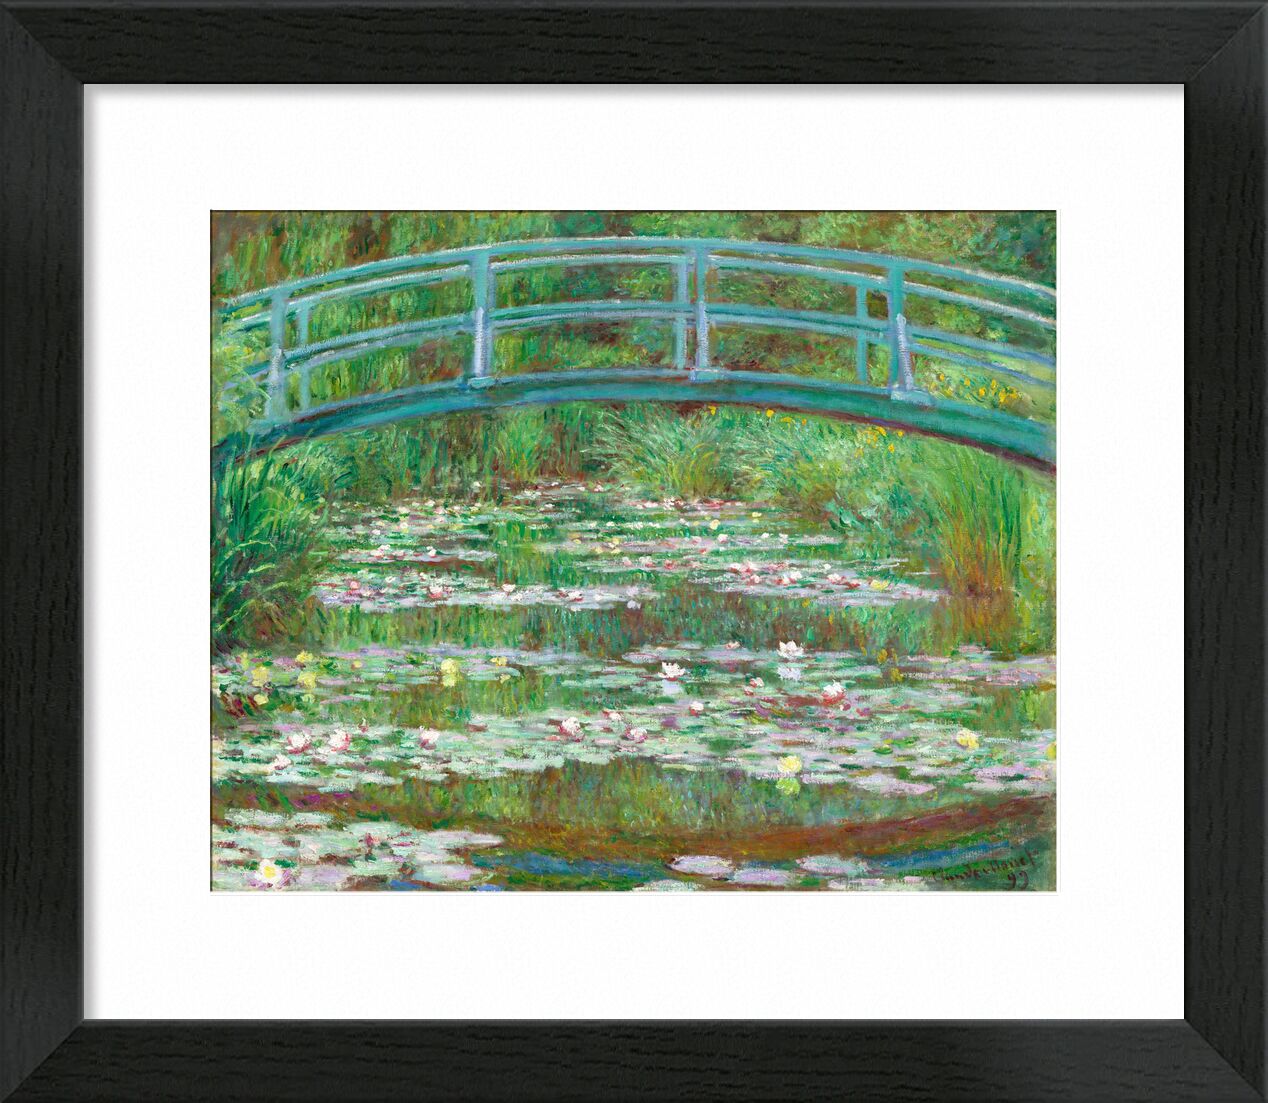 Der japanische Steg - Claude Monet von Bildende Kunst, Prodi Art, Teich, See, Brücke, pont, Japan, CLAUDE MONET, monet, Seerose